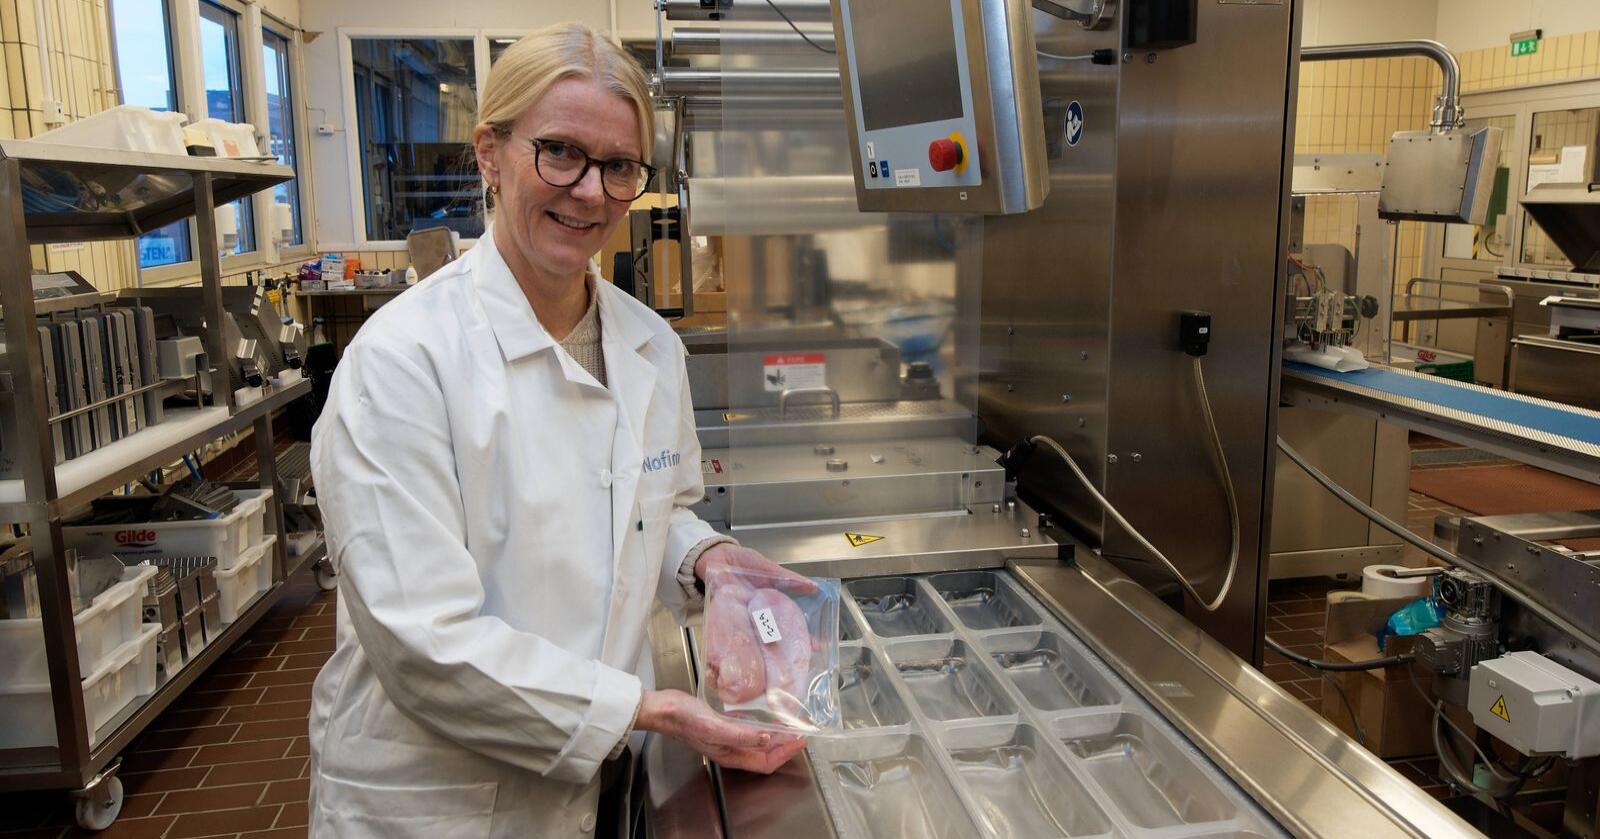 Anlaug Ådland Hansen på Nofima har testet kylling som er pakket med forskjellige metoder. (Foto: Georg Mathisen)